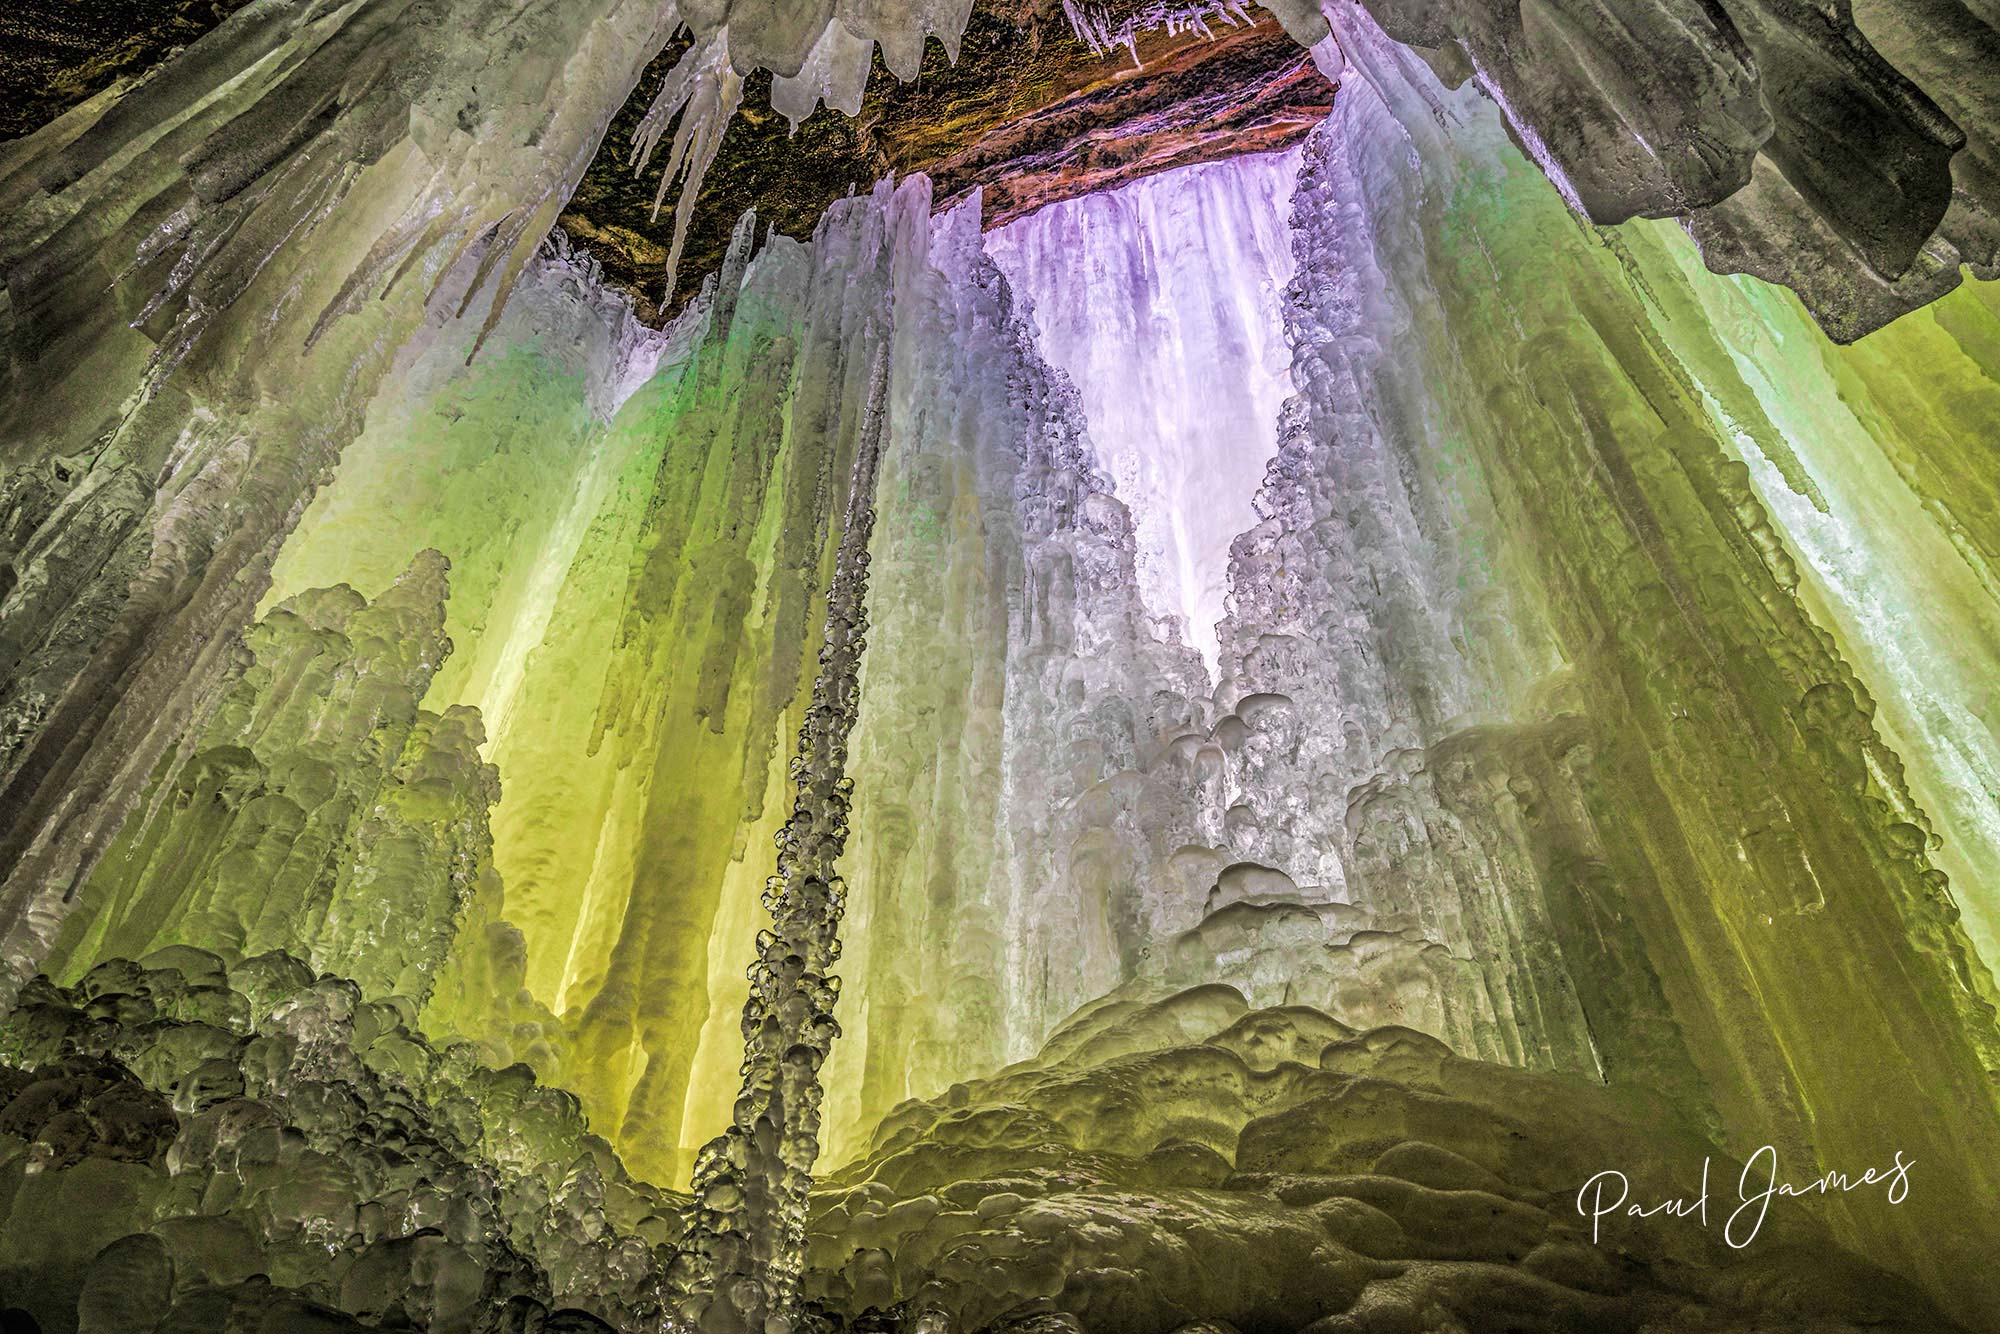 Frozen Waterfalls Ice Cave /Dark Sky Photographic workshop